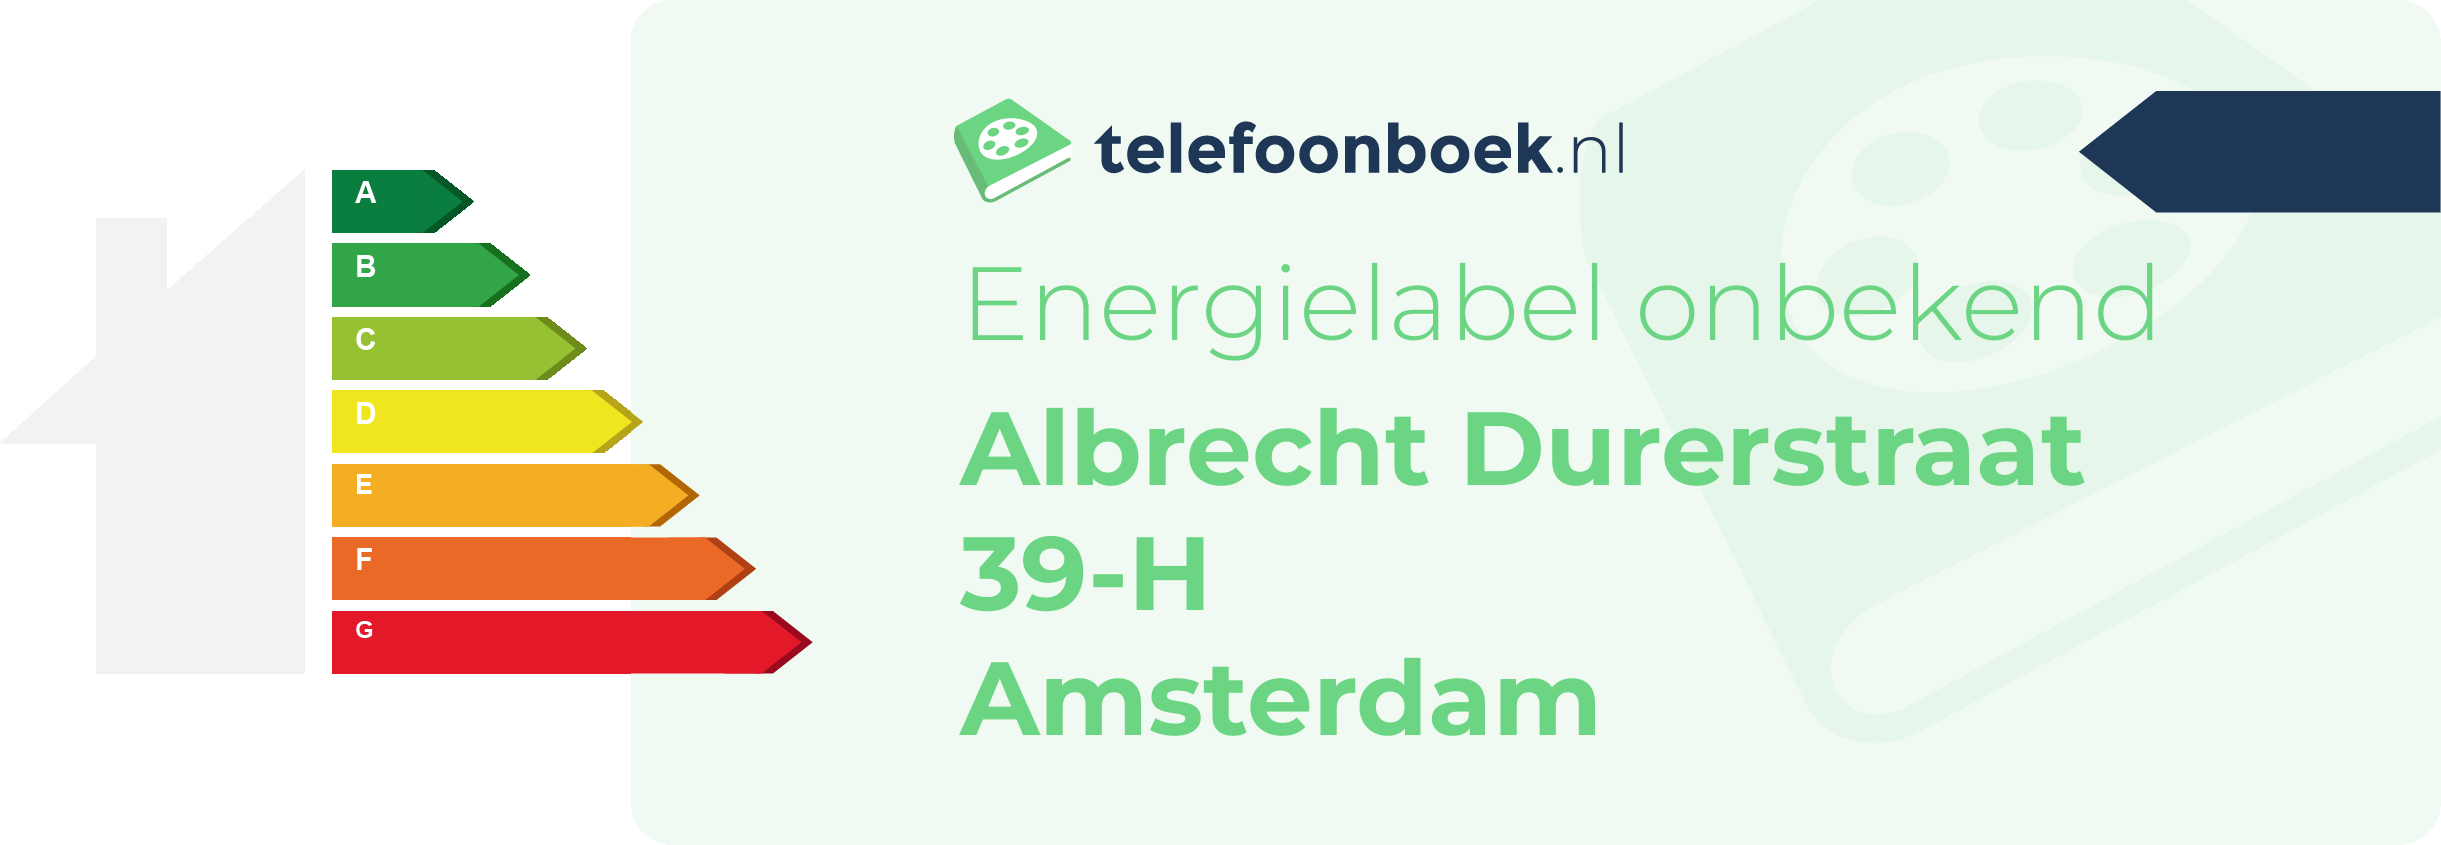 Energielabel Albrecht Durerstraat 39-H Amsterdam